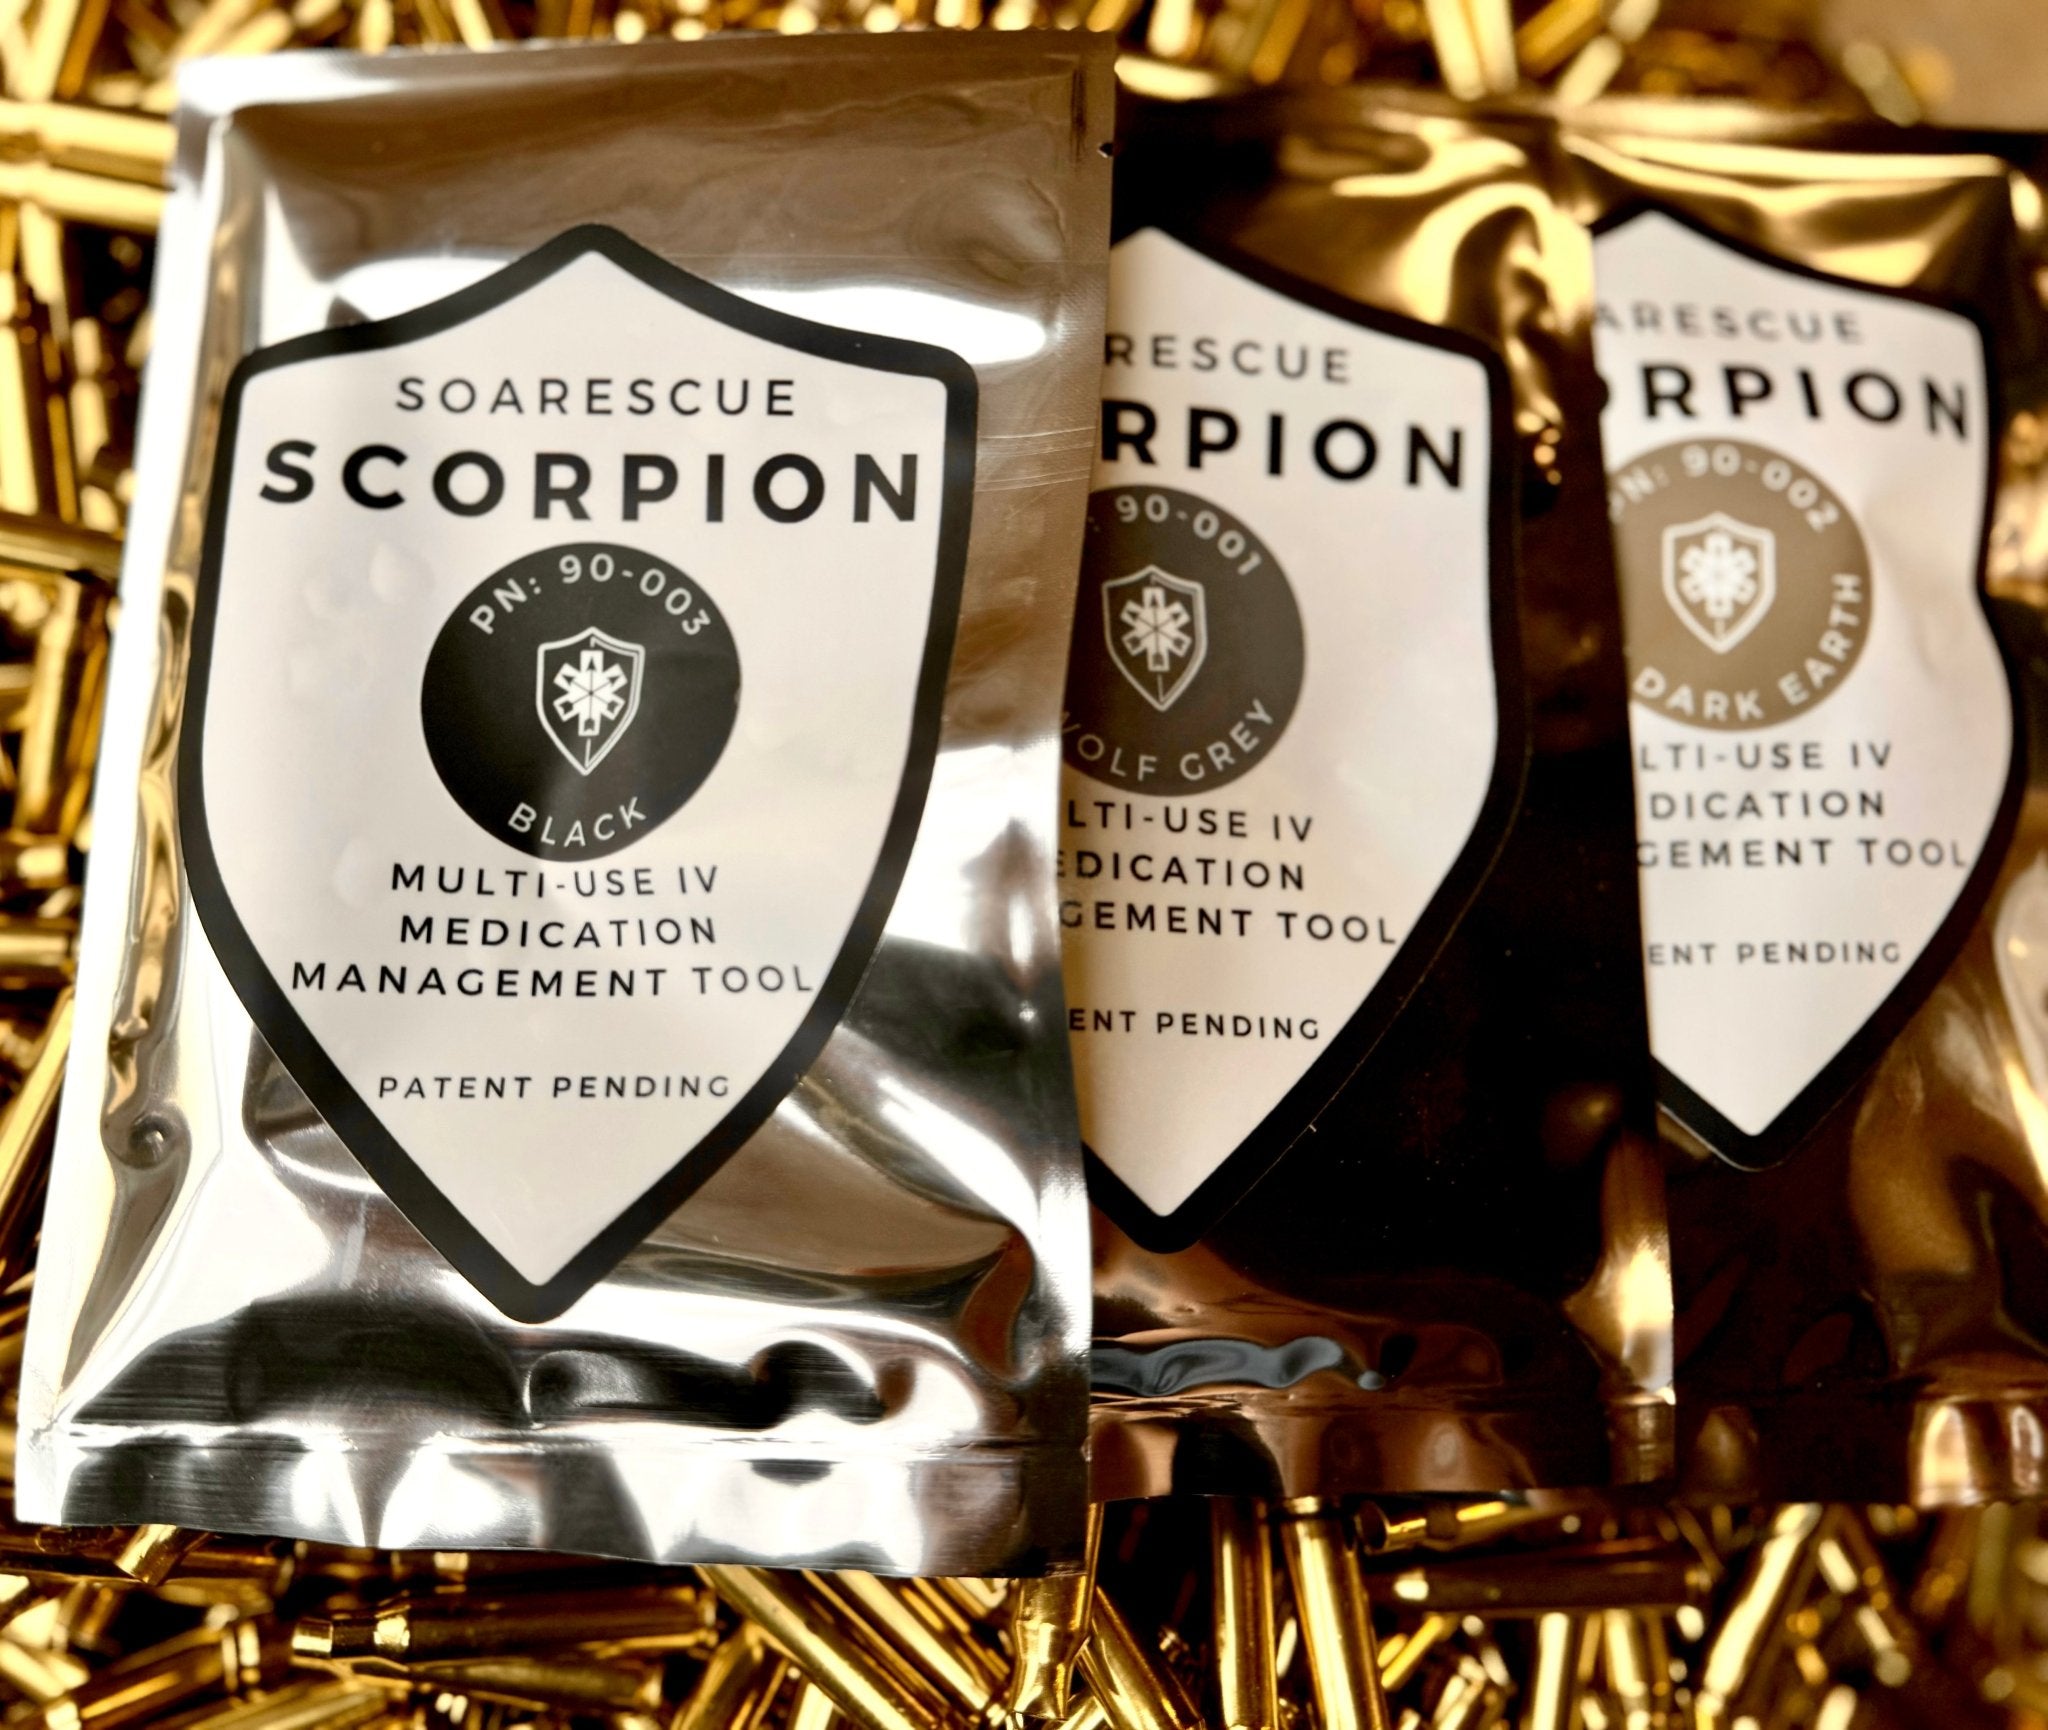 SOARescue Scorpion - SOARescue